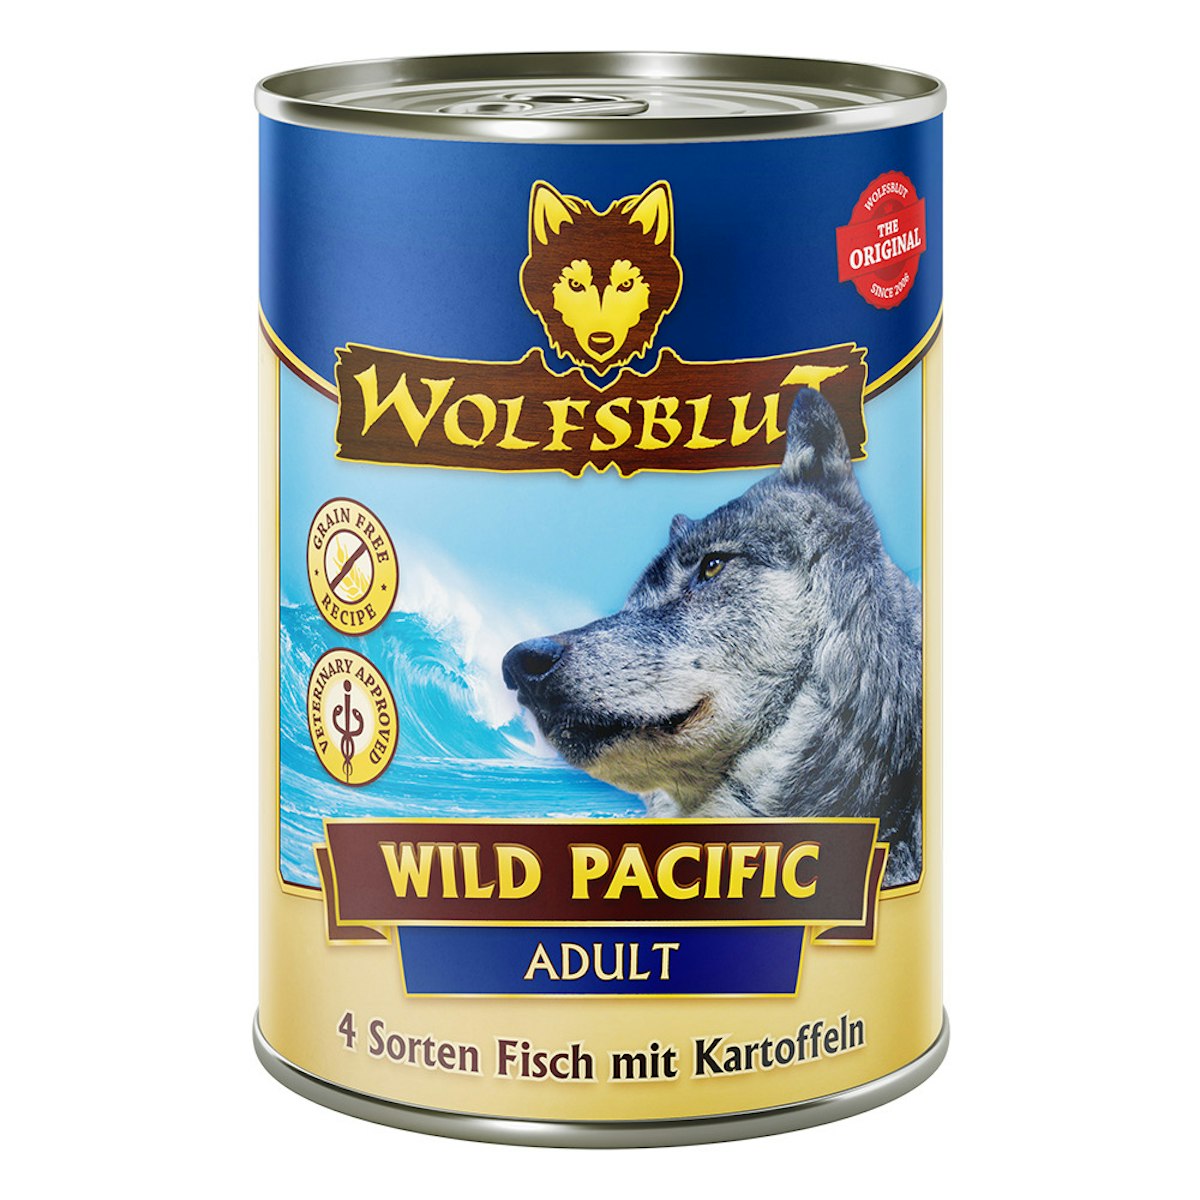 WOLFSBLUT 395g Hundenassfutter Sparpaket 12 x 395 Gramm Wild Pacific 4 Sorten Fisch mit Kartoffeln